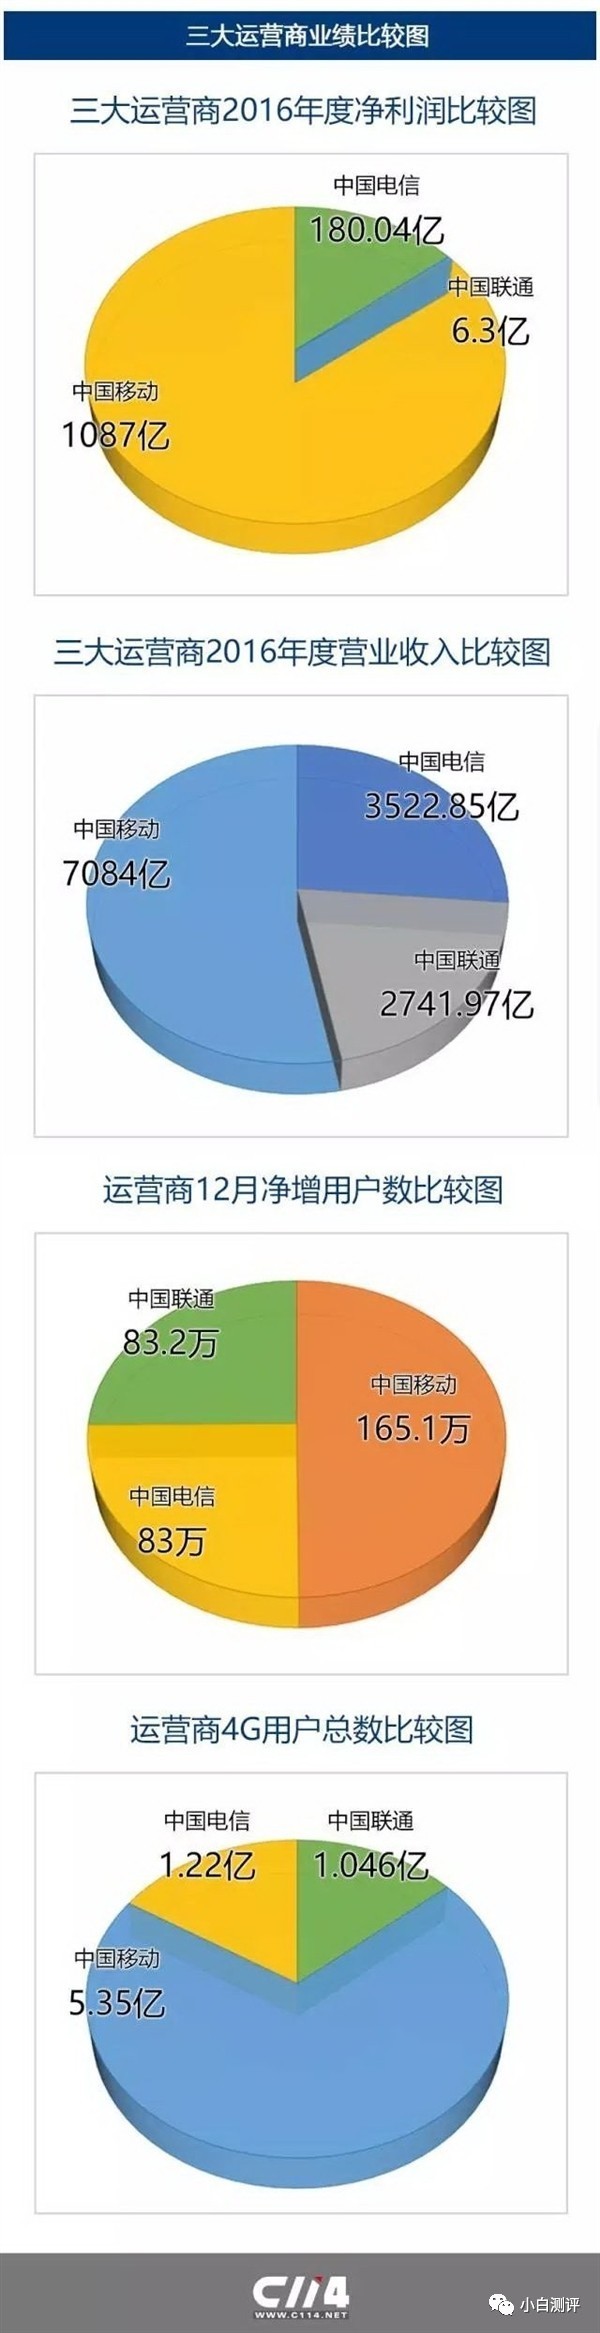 报码:【j2开奖】【数据】中国移动2016年业绩 日赚3亿元 赚钱机器 小白要跳槽